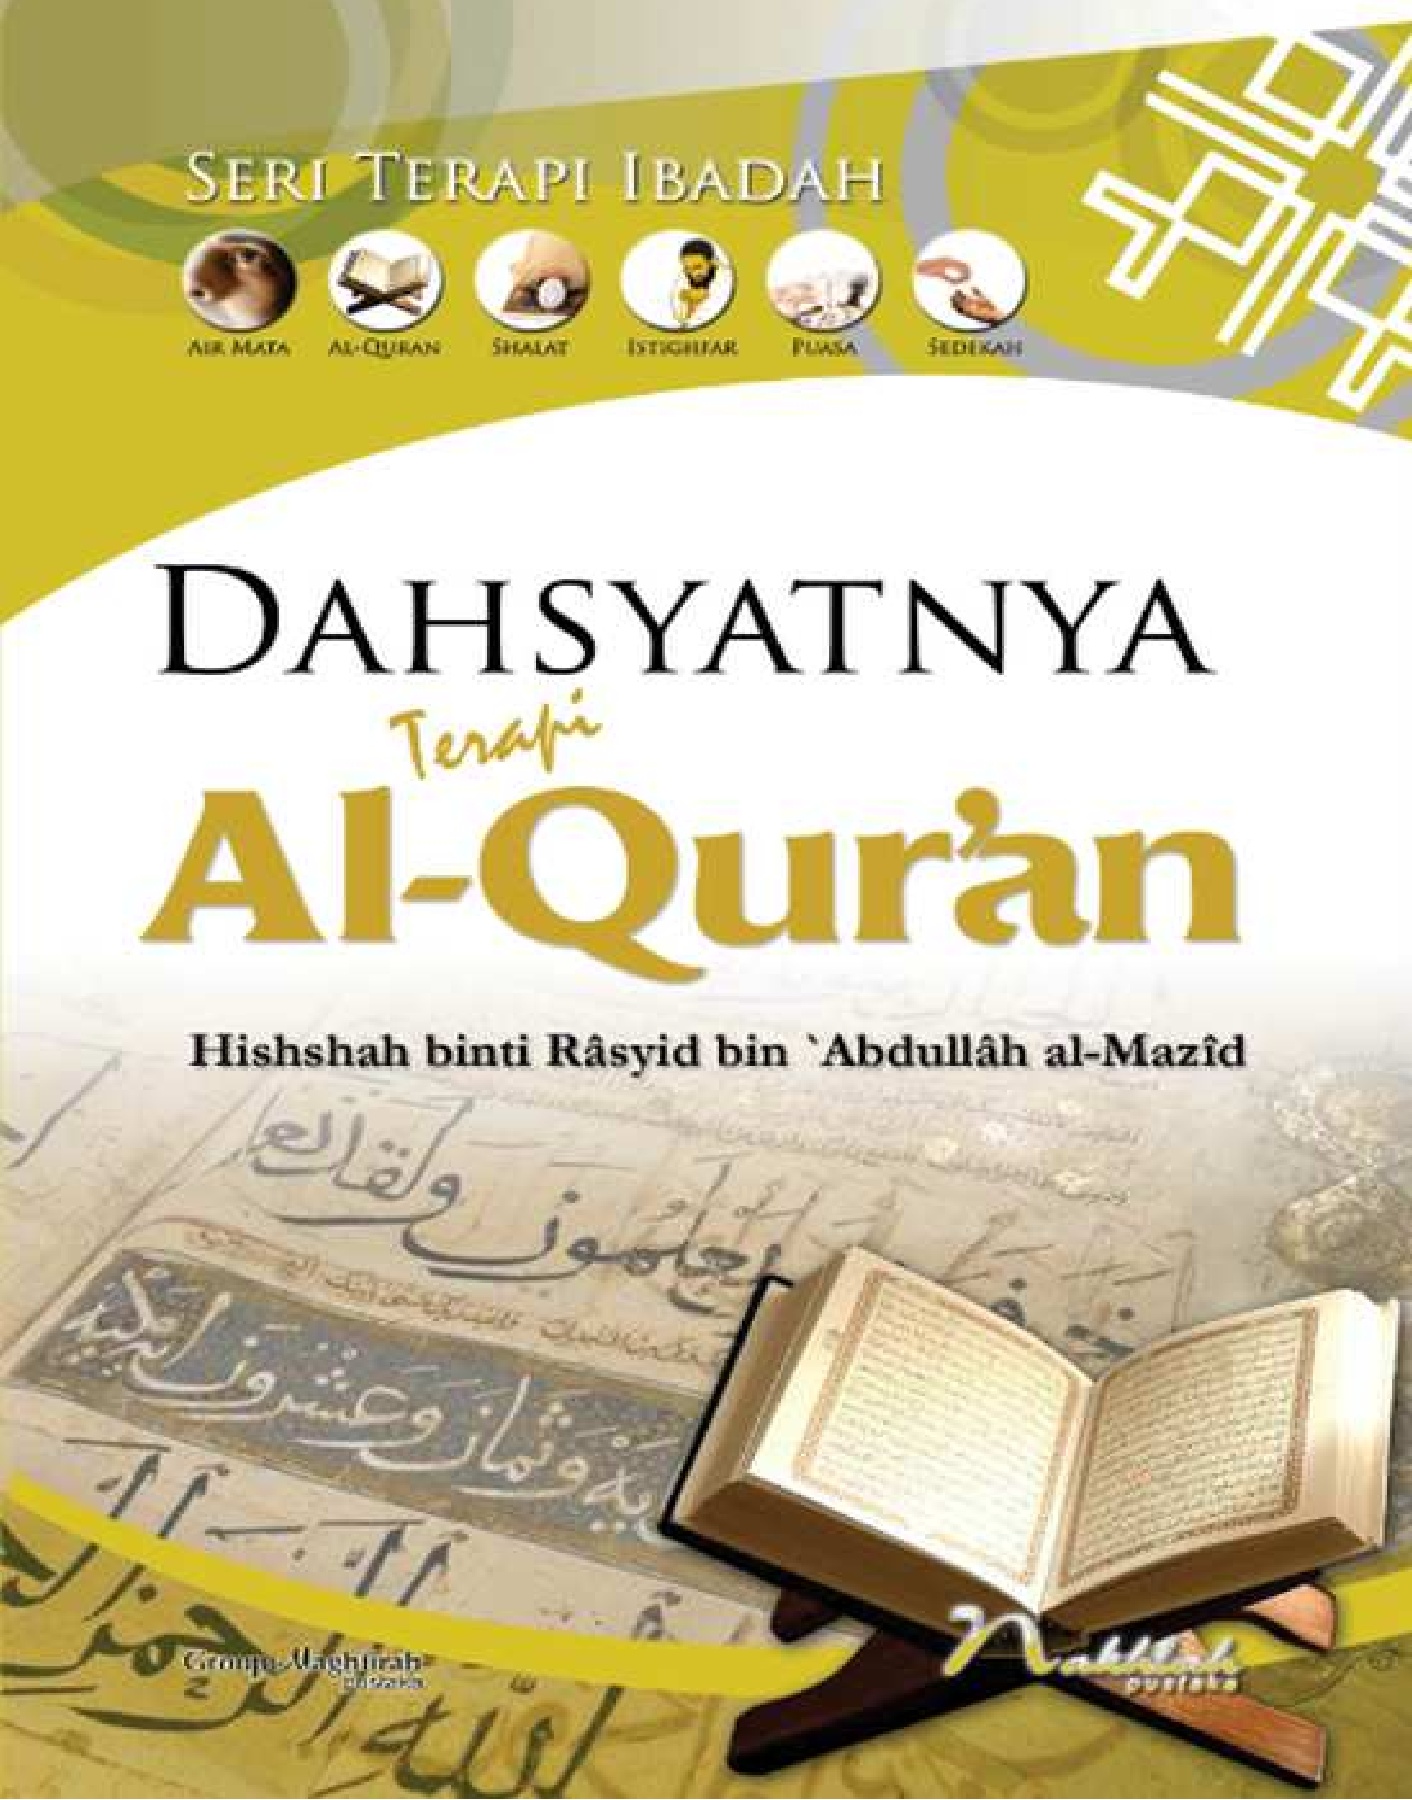 Dahsyatnya terapi Al-Qur'an